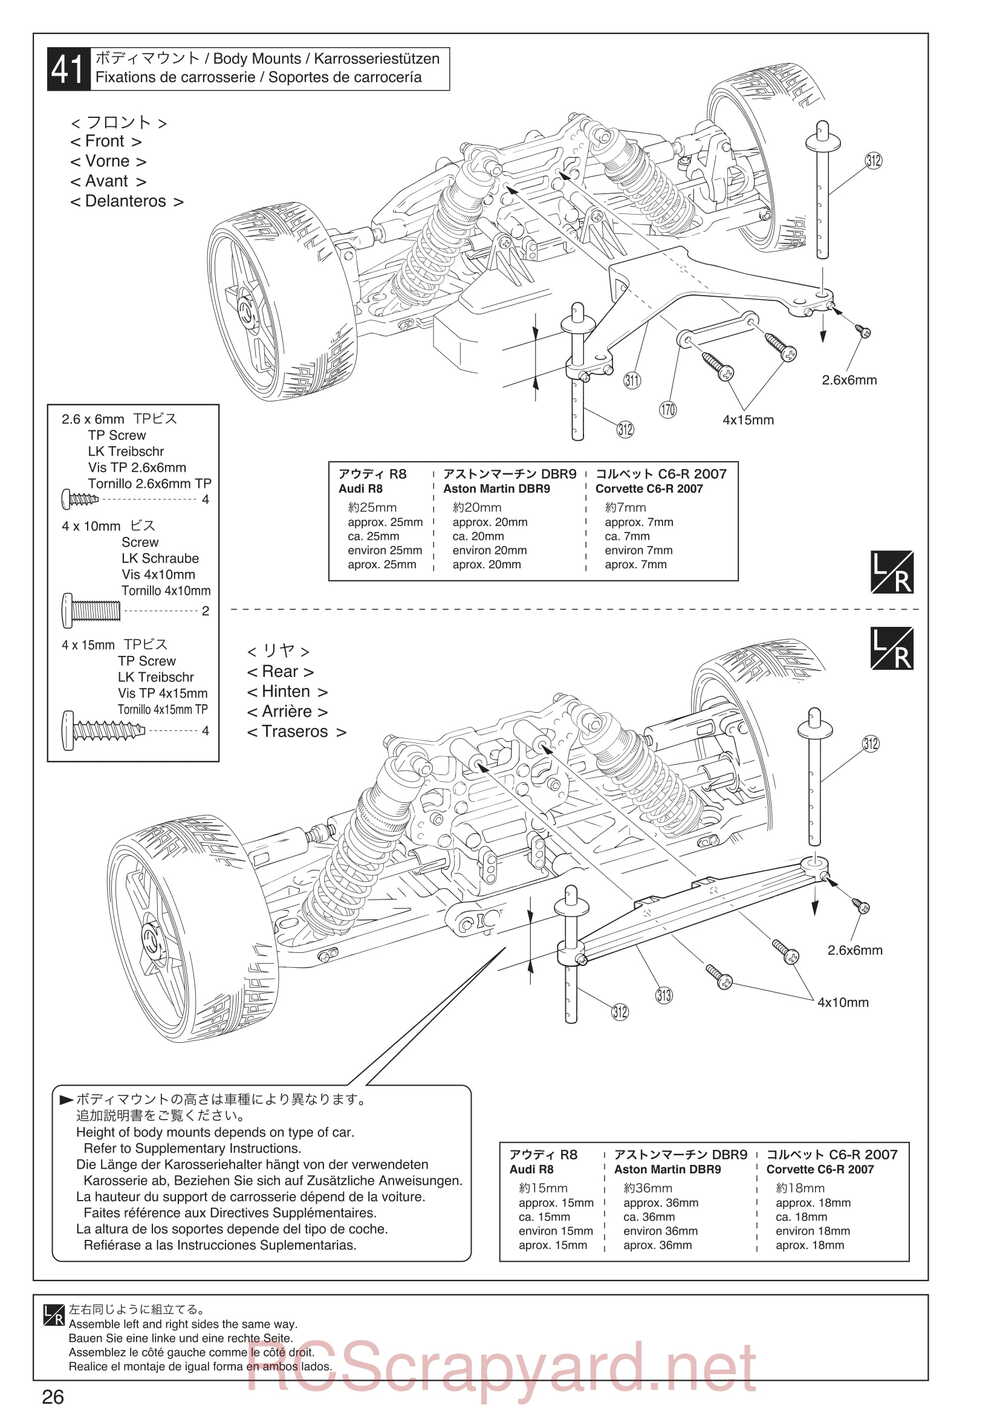 Kyosho - 30935 - Inferno GT2 VE Race-Spec - Manual - Page 26